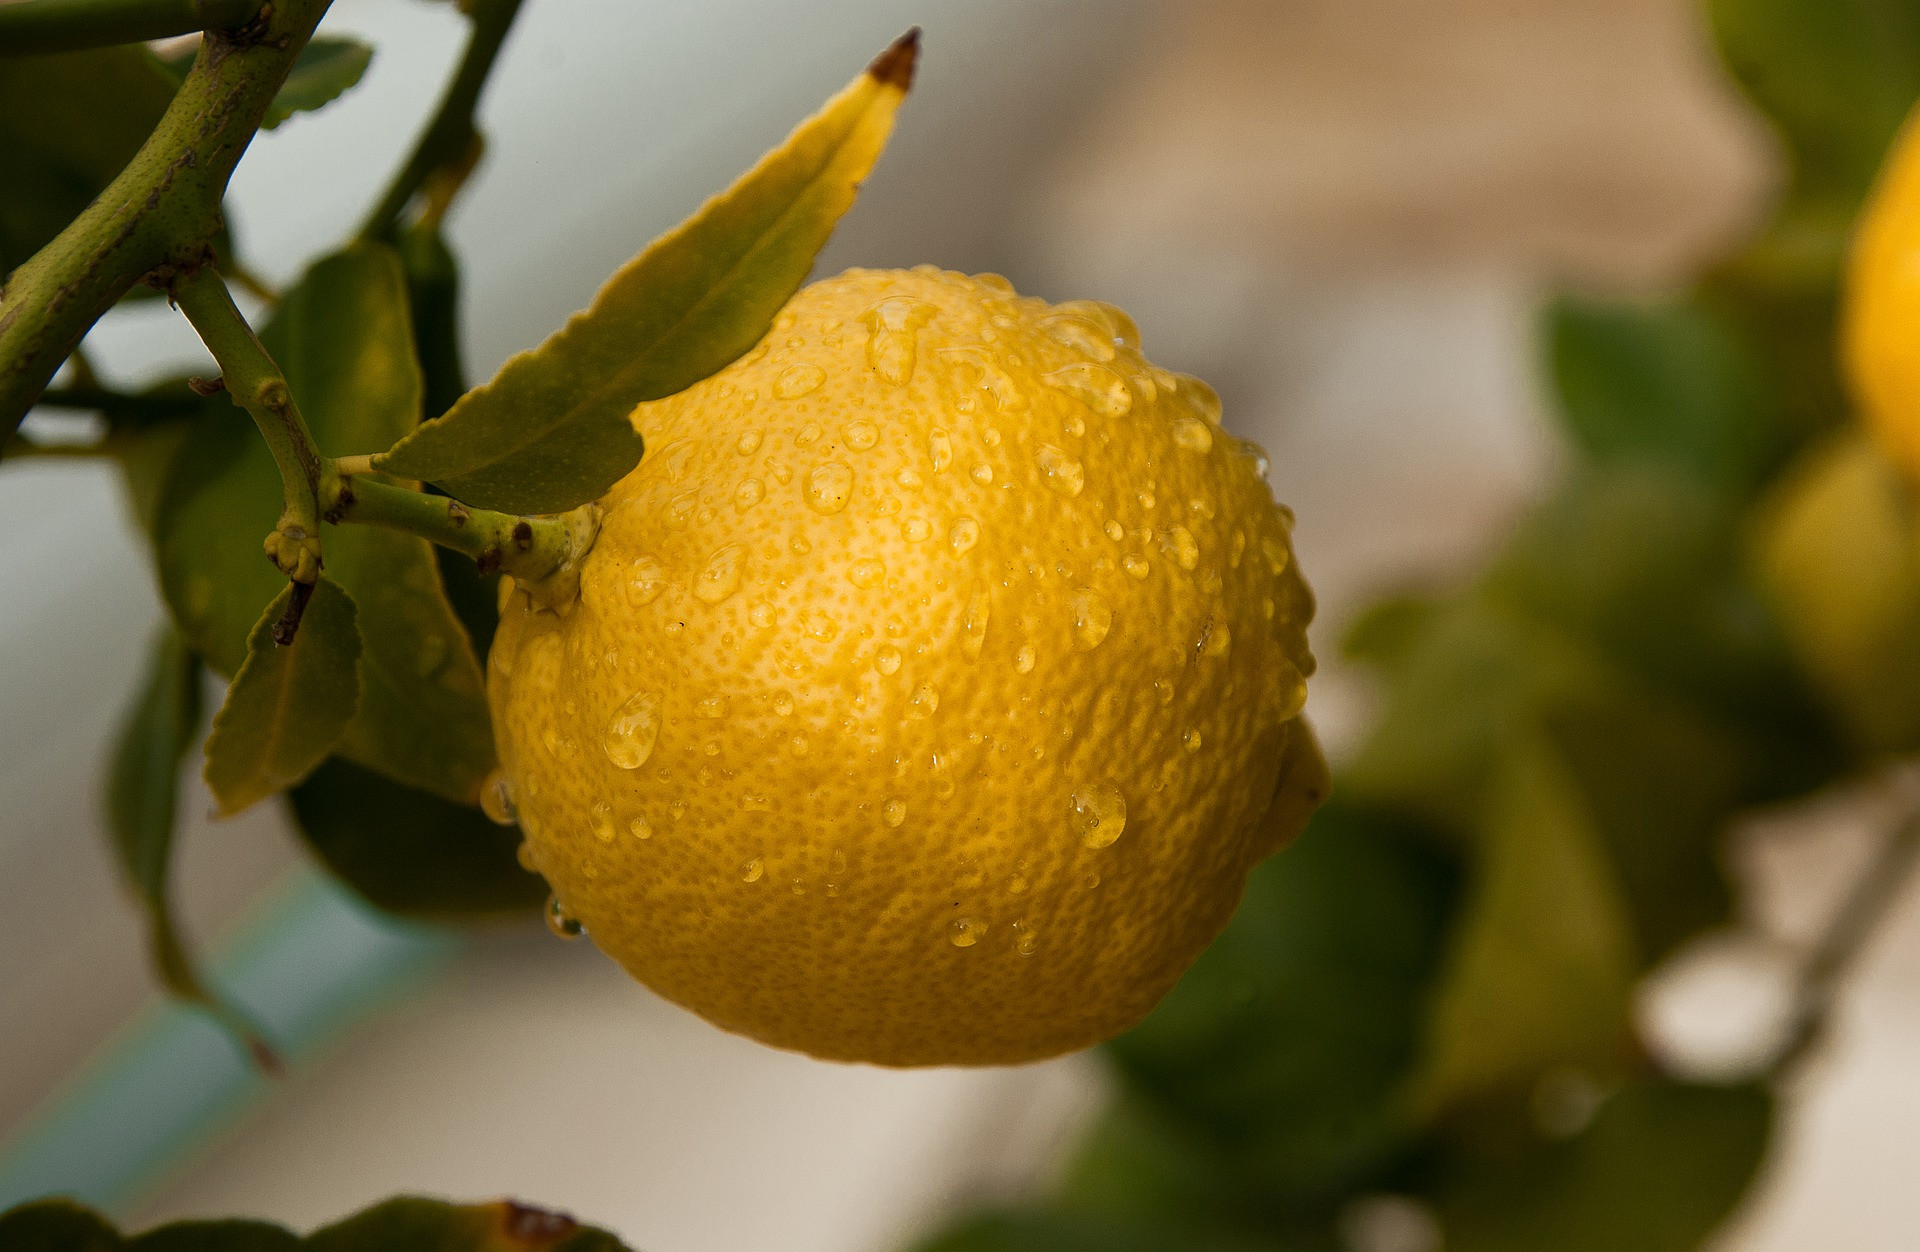 Drvivá väčšina citrusov sa k nám dováža s chemicky ošetrenou kôrou (výrobcovia a obchody musia túto skutočnosť uvádzať). Najčastejšie sú to pesticídy alebo fungicídy. Chémie sa nezbavíte ani dôkladným umytím. Ak si preto chcete dať celý citrón napríklad do čaju alebo použiť jeho kôru, siahnite po biocitrónoch.